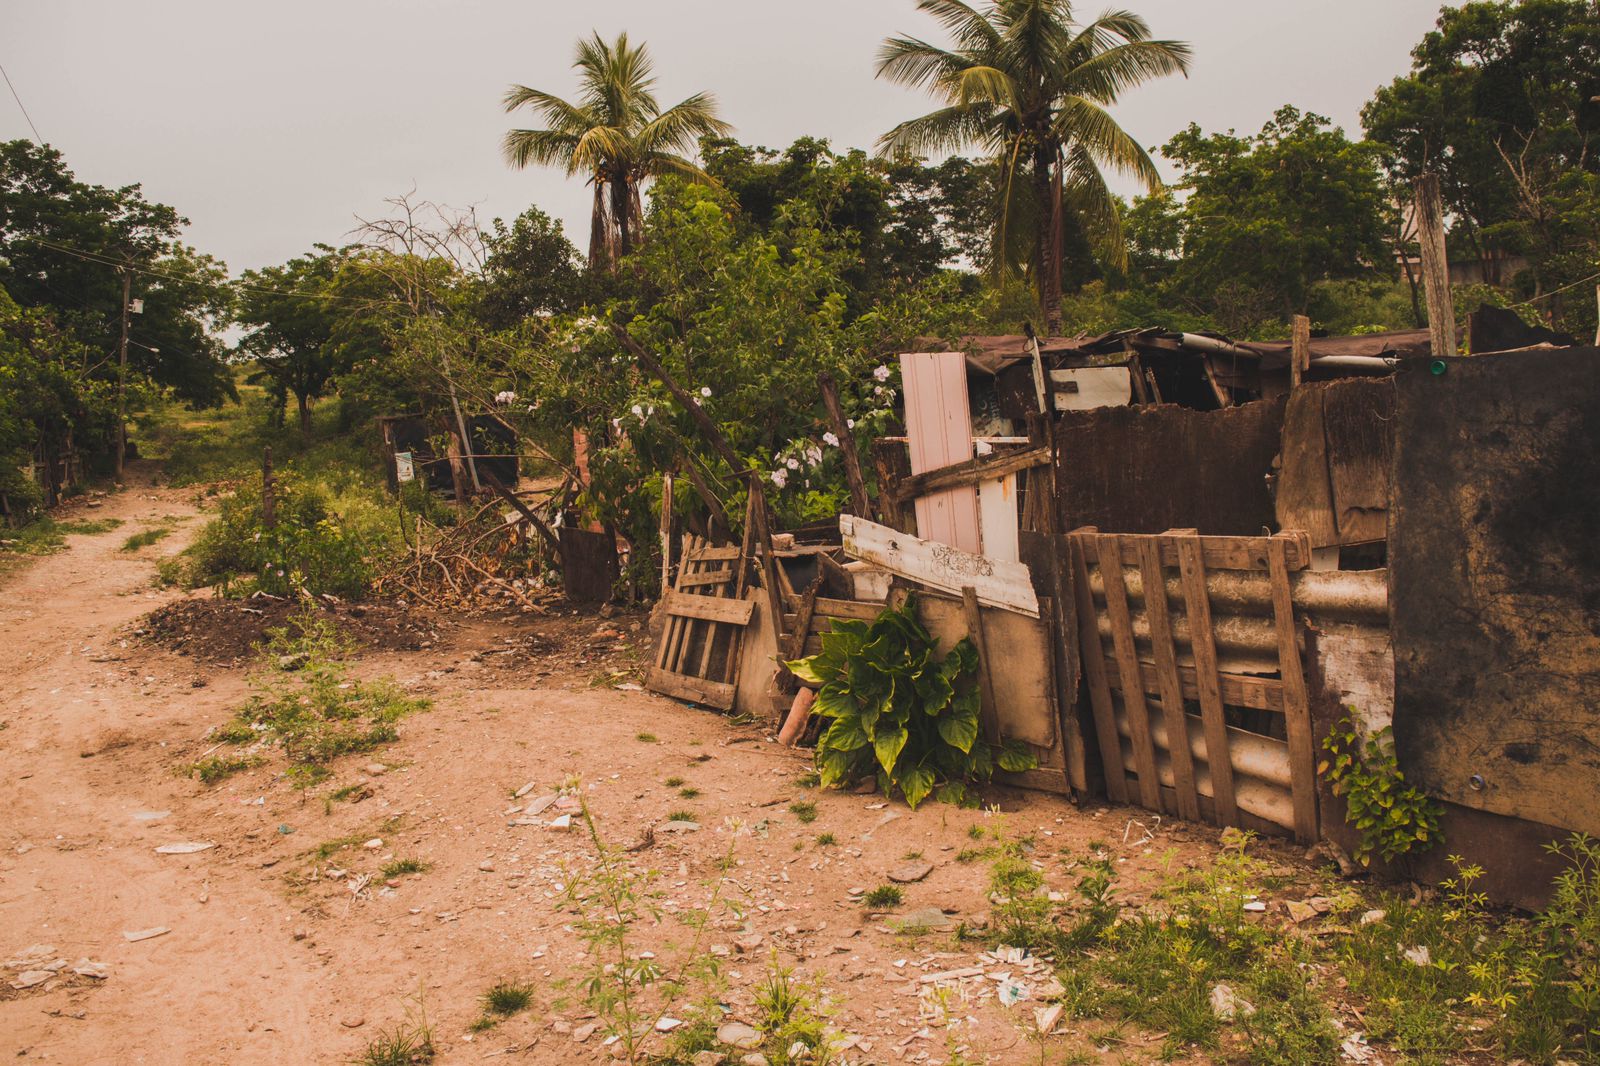 Nos fundos do antigo lixão, várias casas são de madeira e sem acesso à saneamento básico. Bianca Lorena/Espaço Gaia